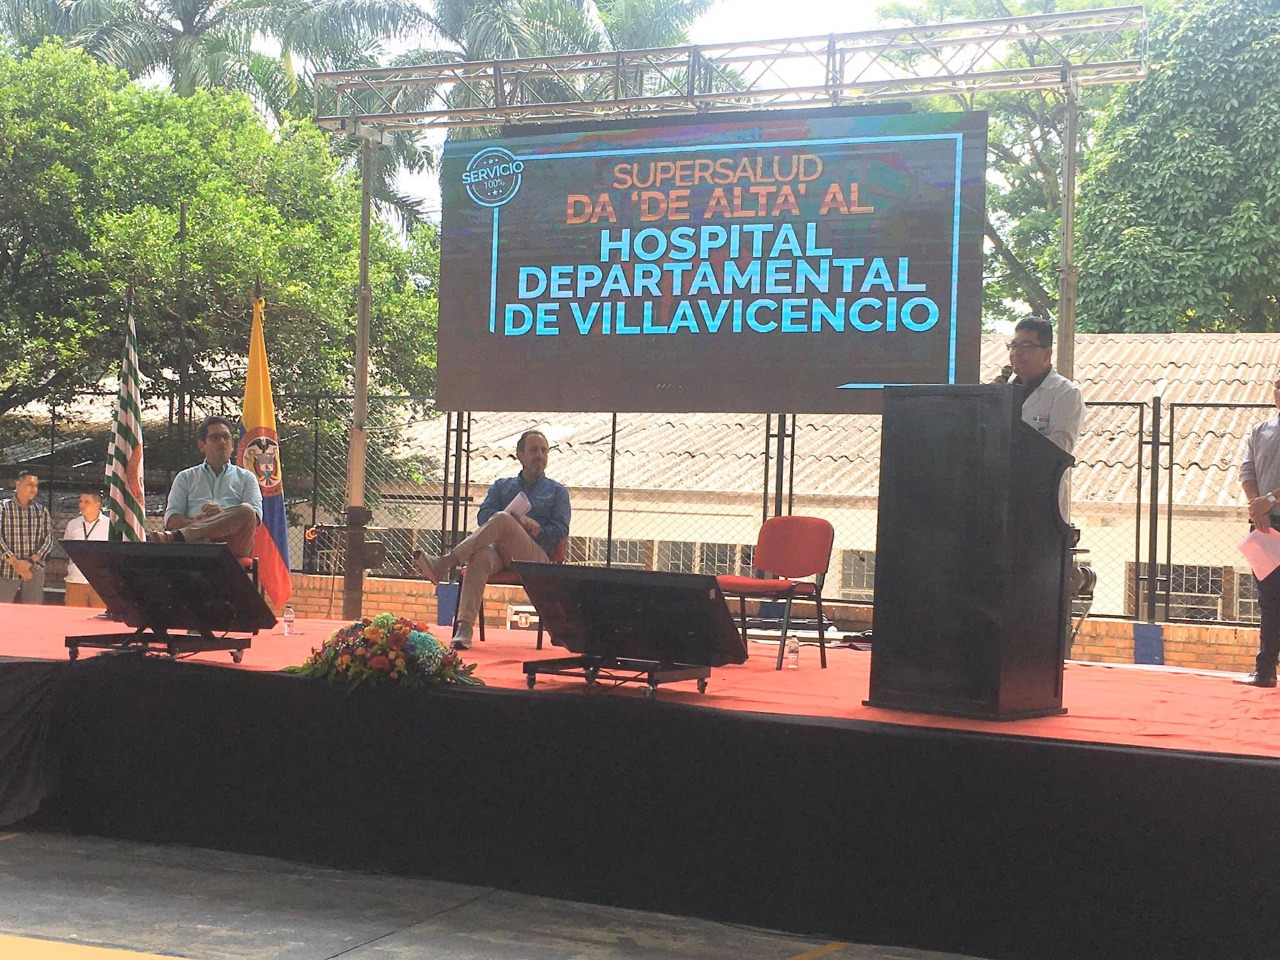 Terminó intervención de Supersalud en Hospital Departamental de Villavicencio 1